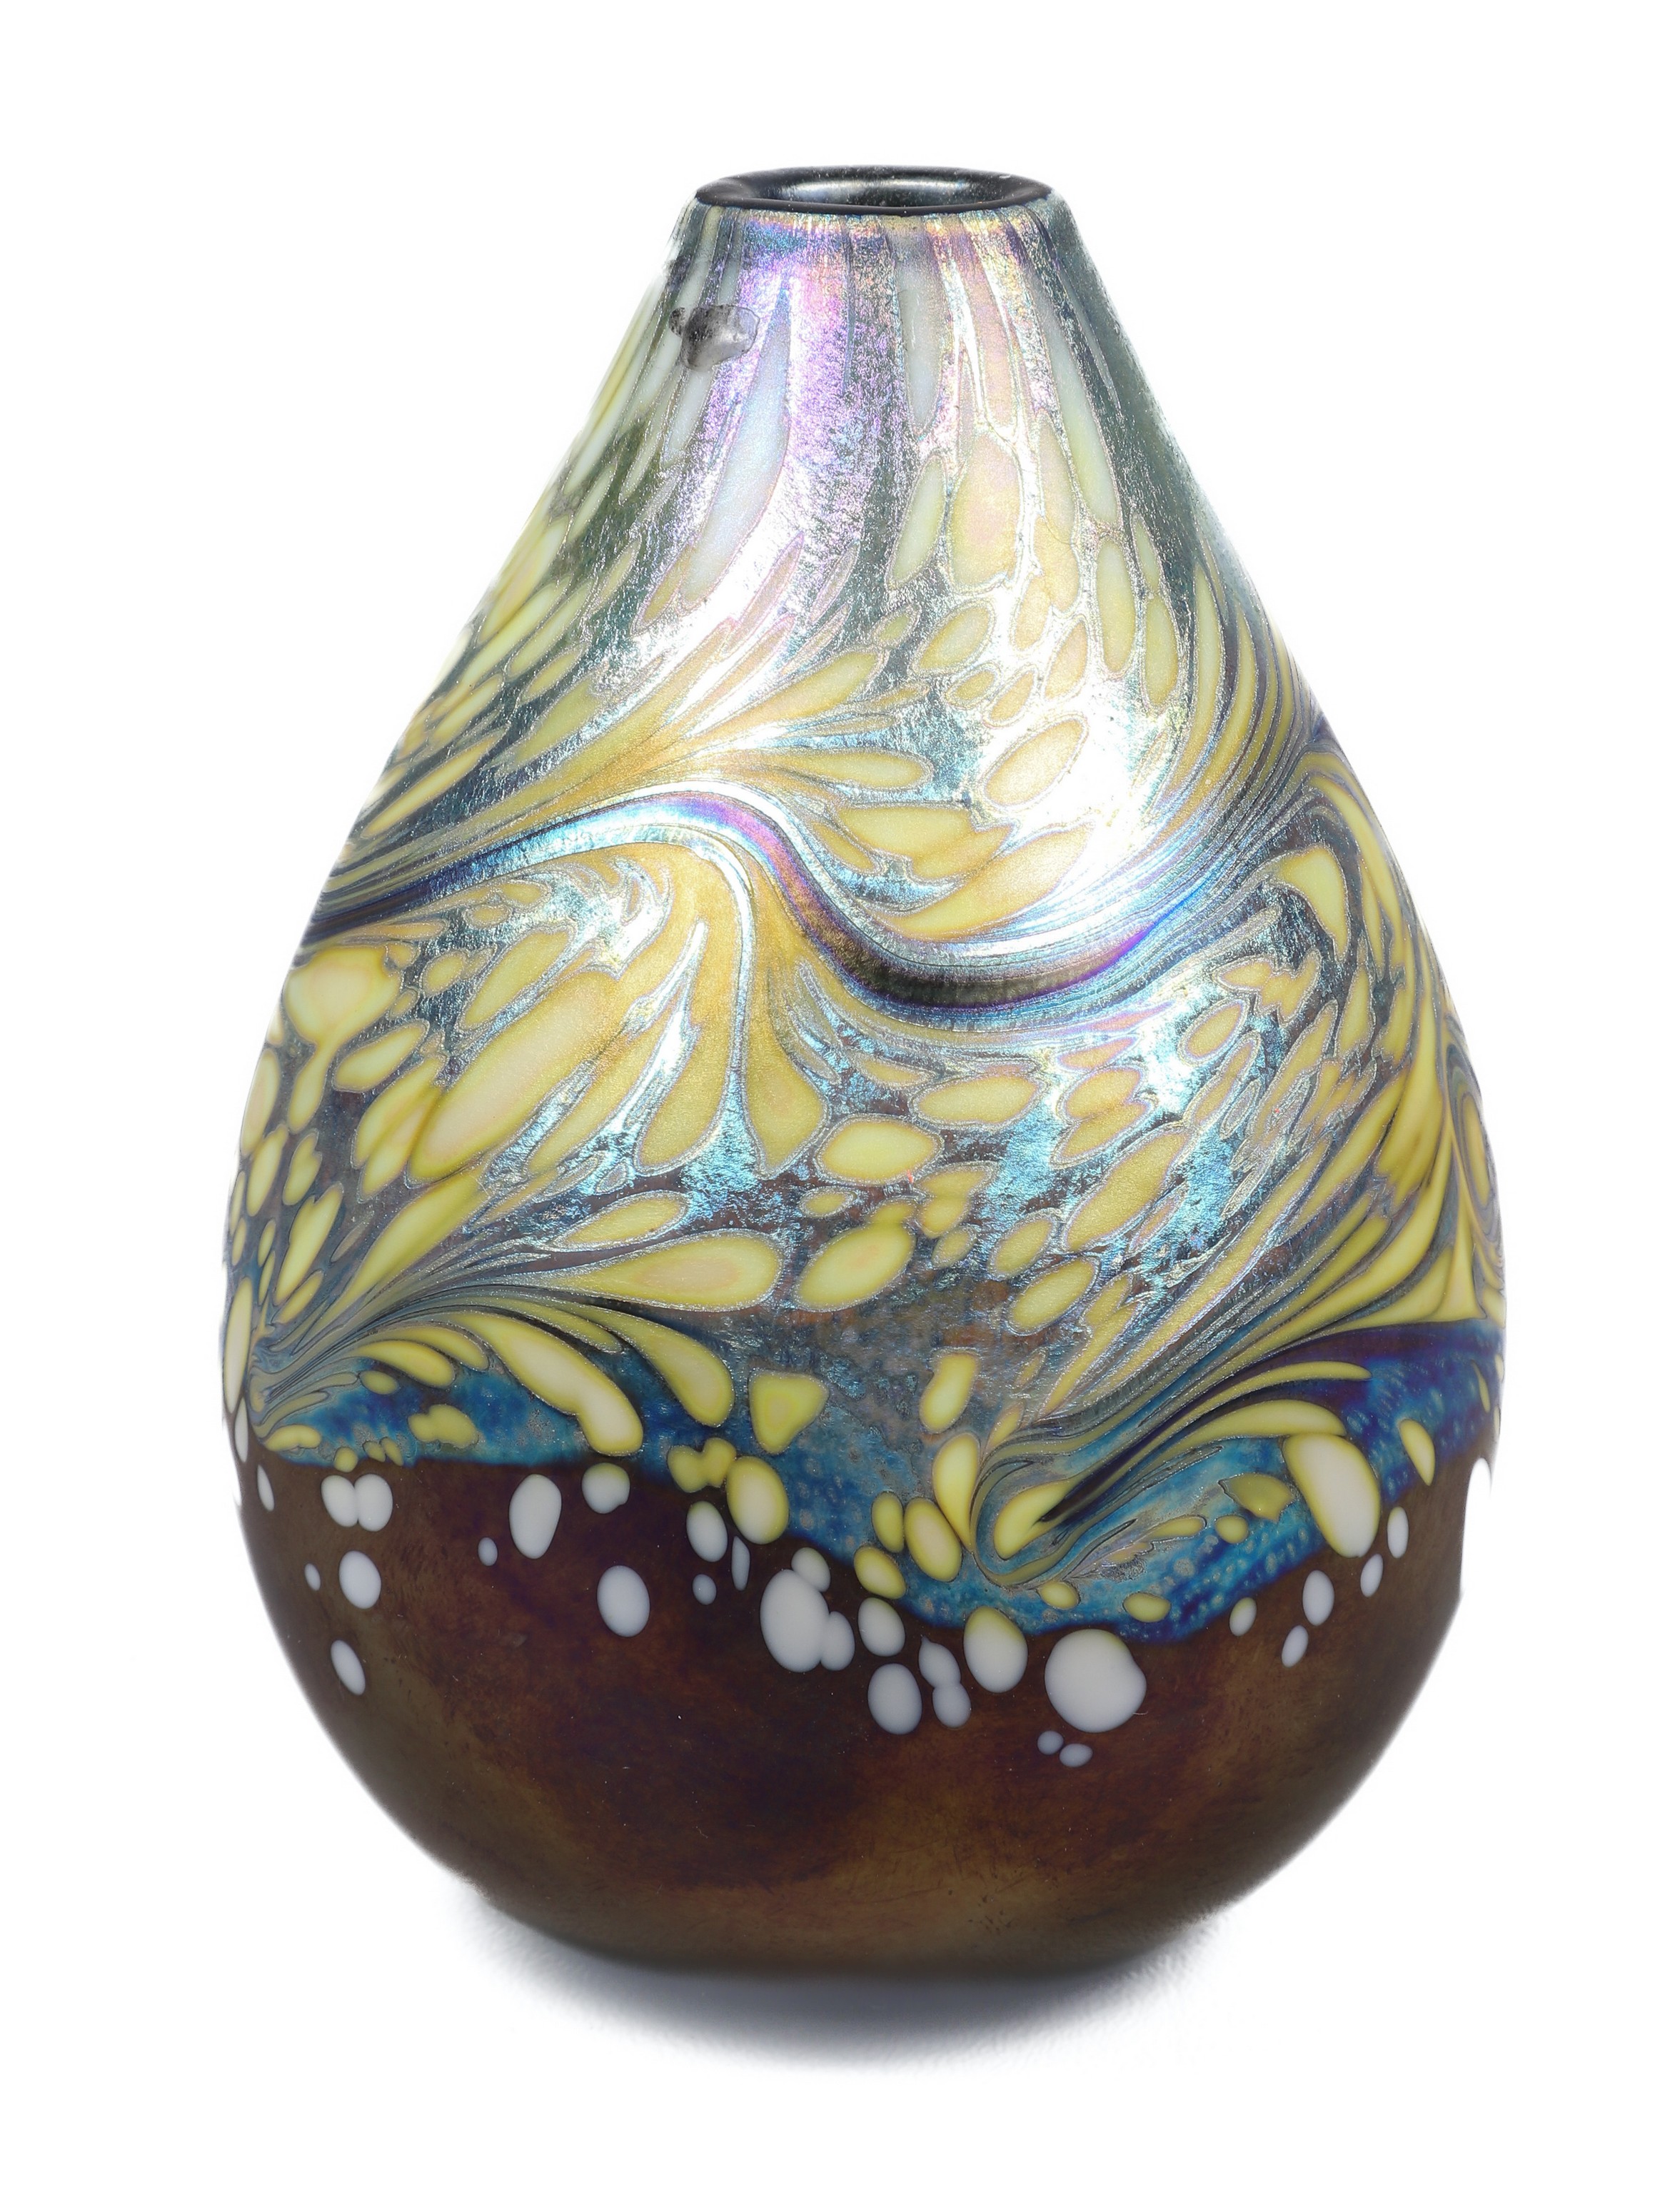 Brian Maytum iridescent art glass 3b4e9c